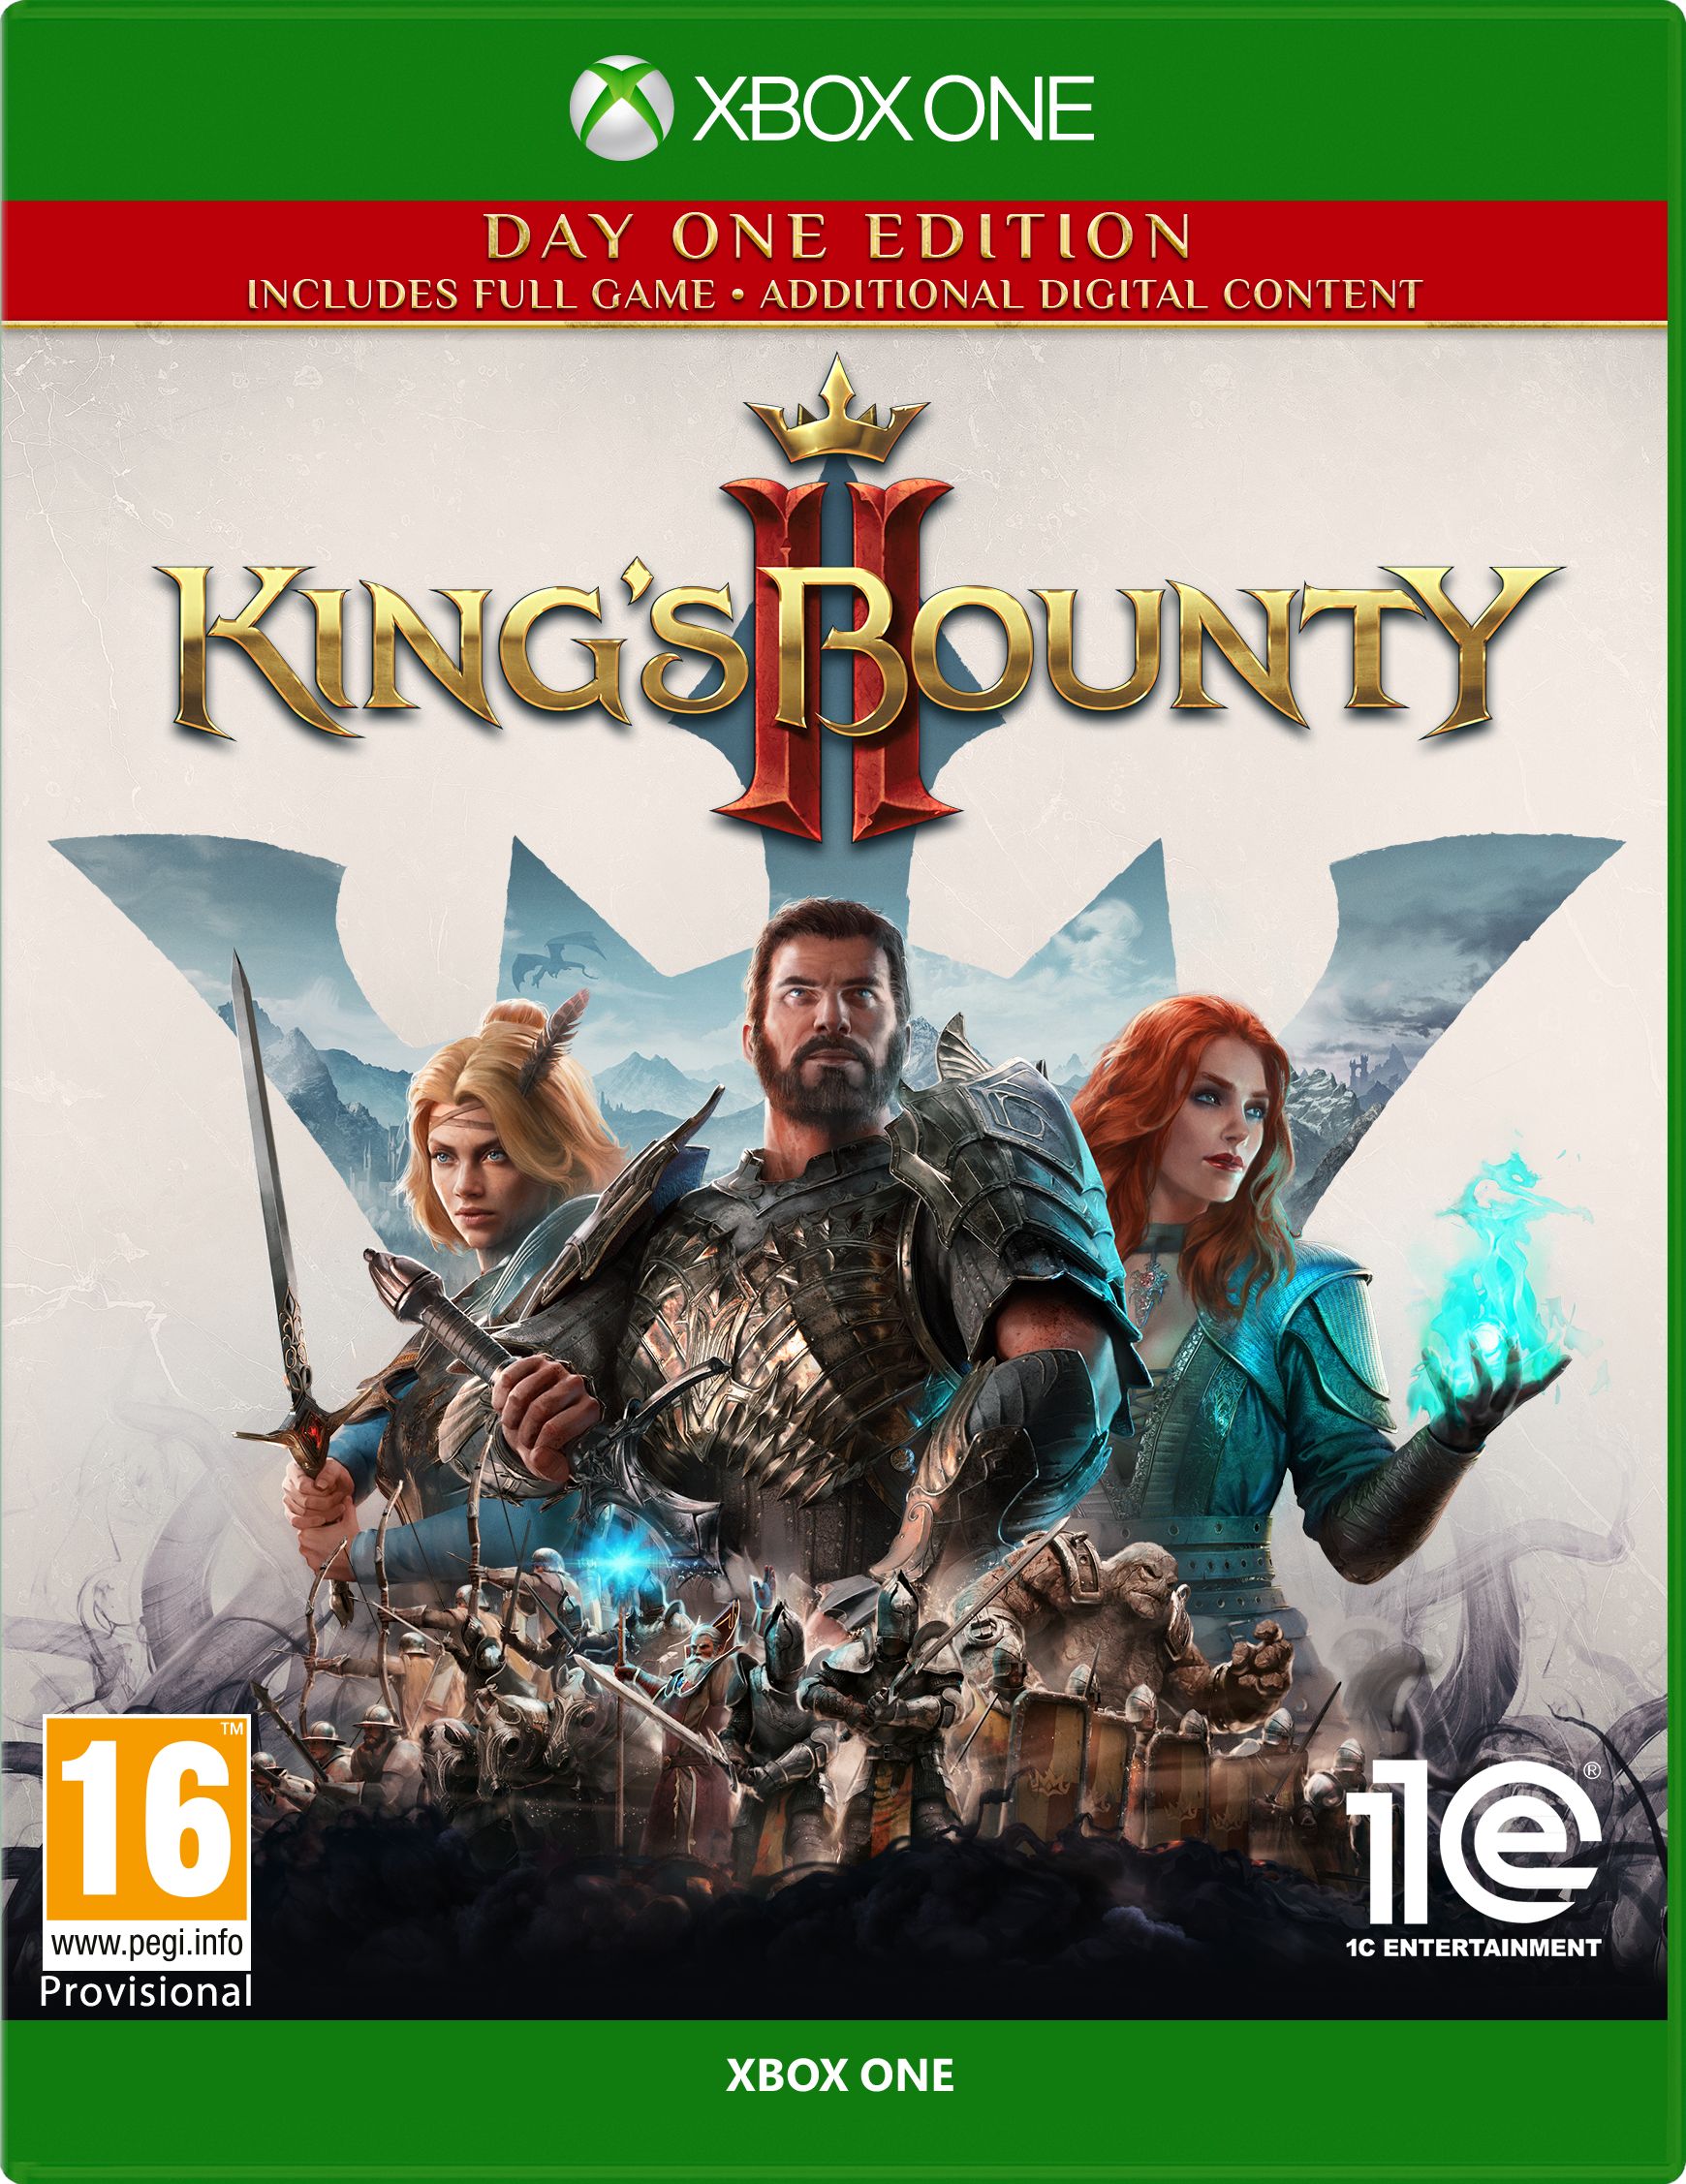 King's Bounty II Xbox One - Xbox Series X